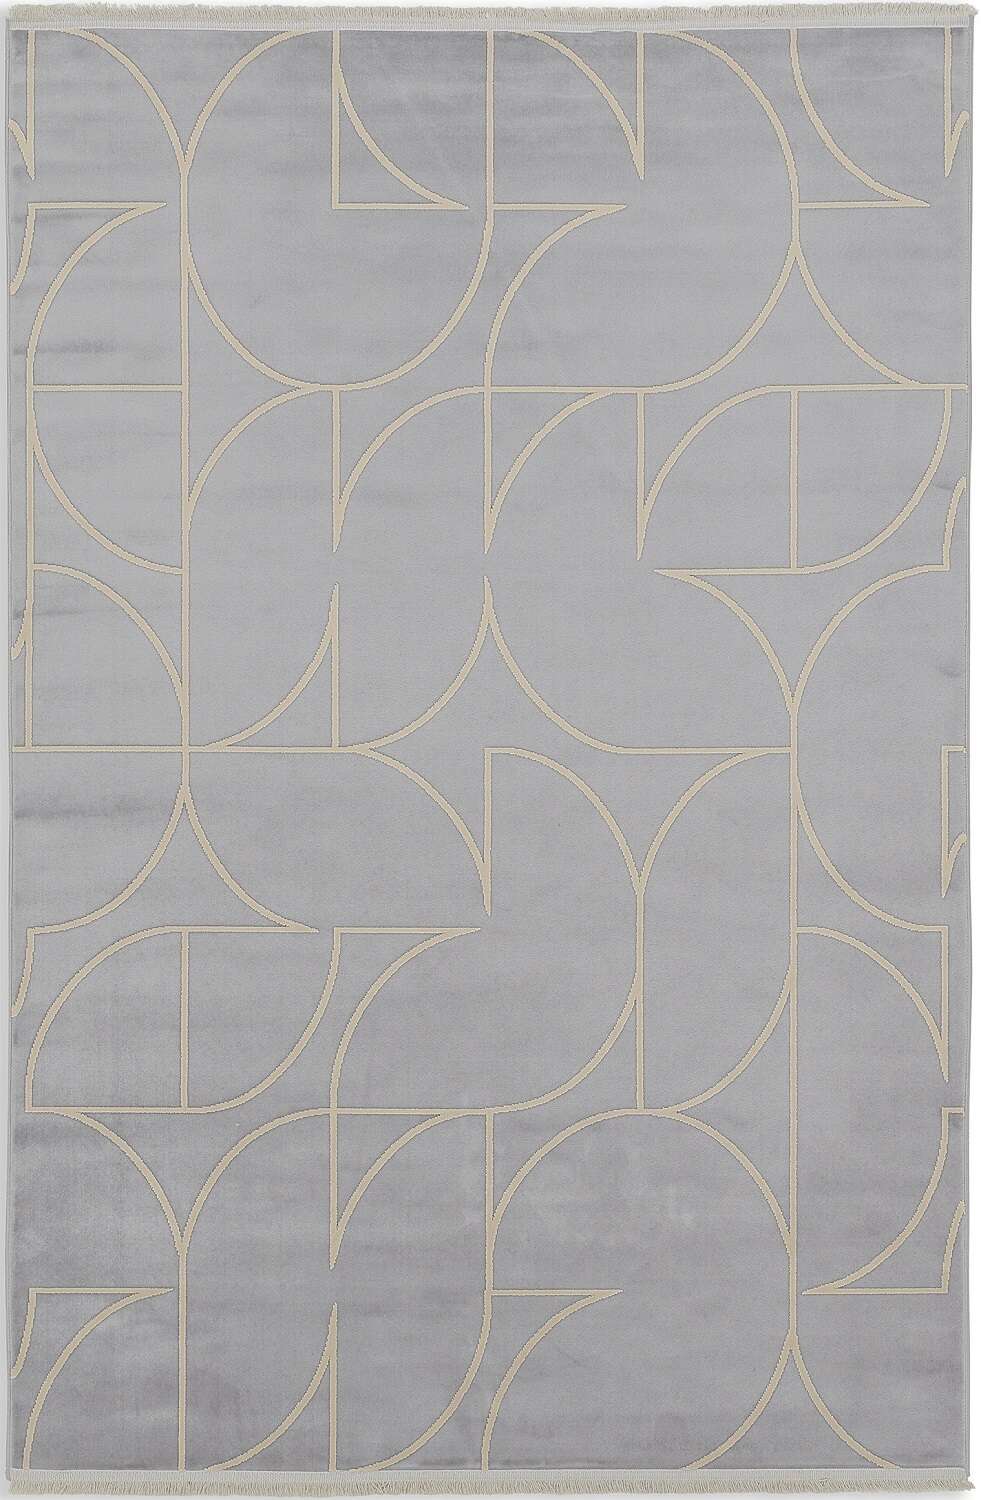 Schöner Wohnen Teppich Magic 6104-222 Flachgewebe grau-gold